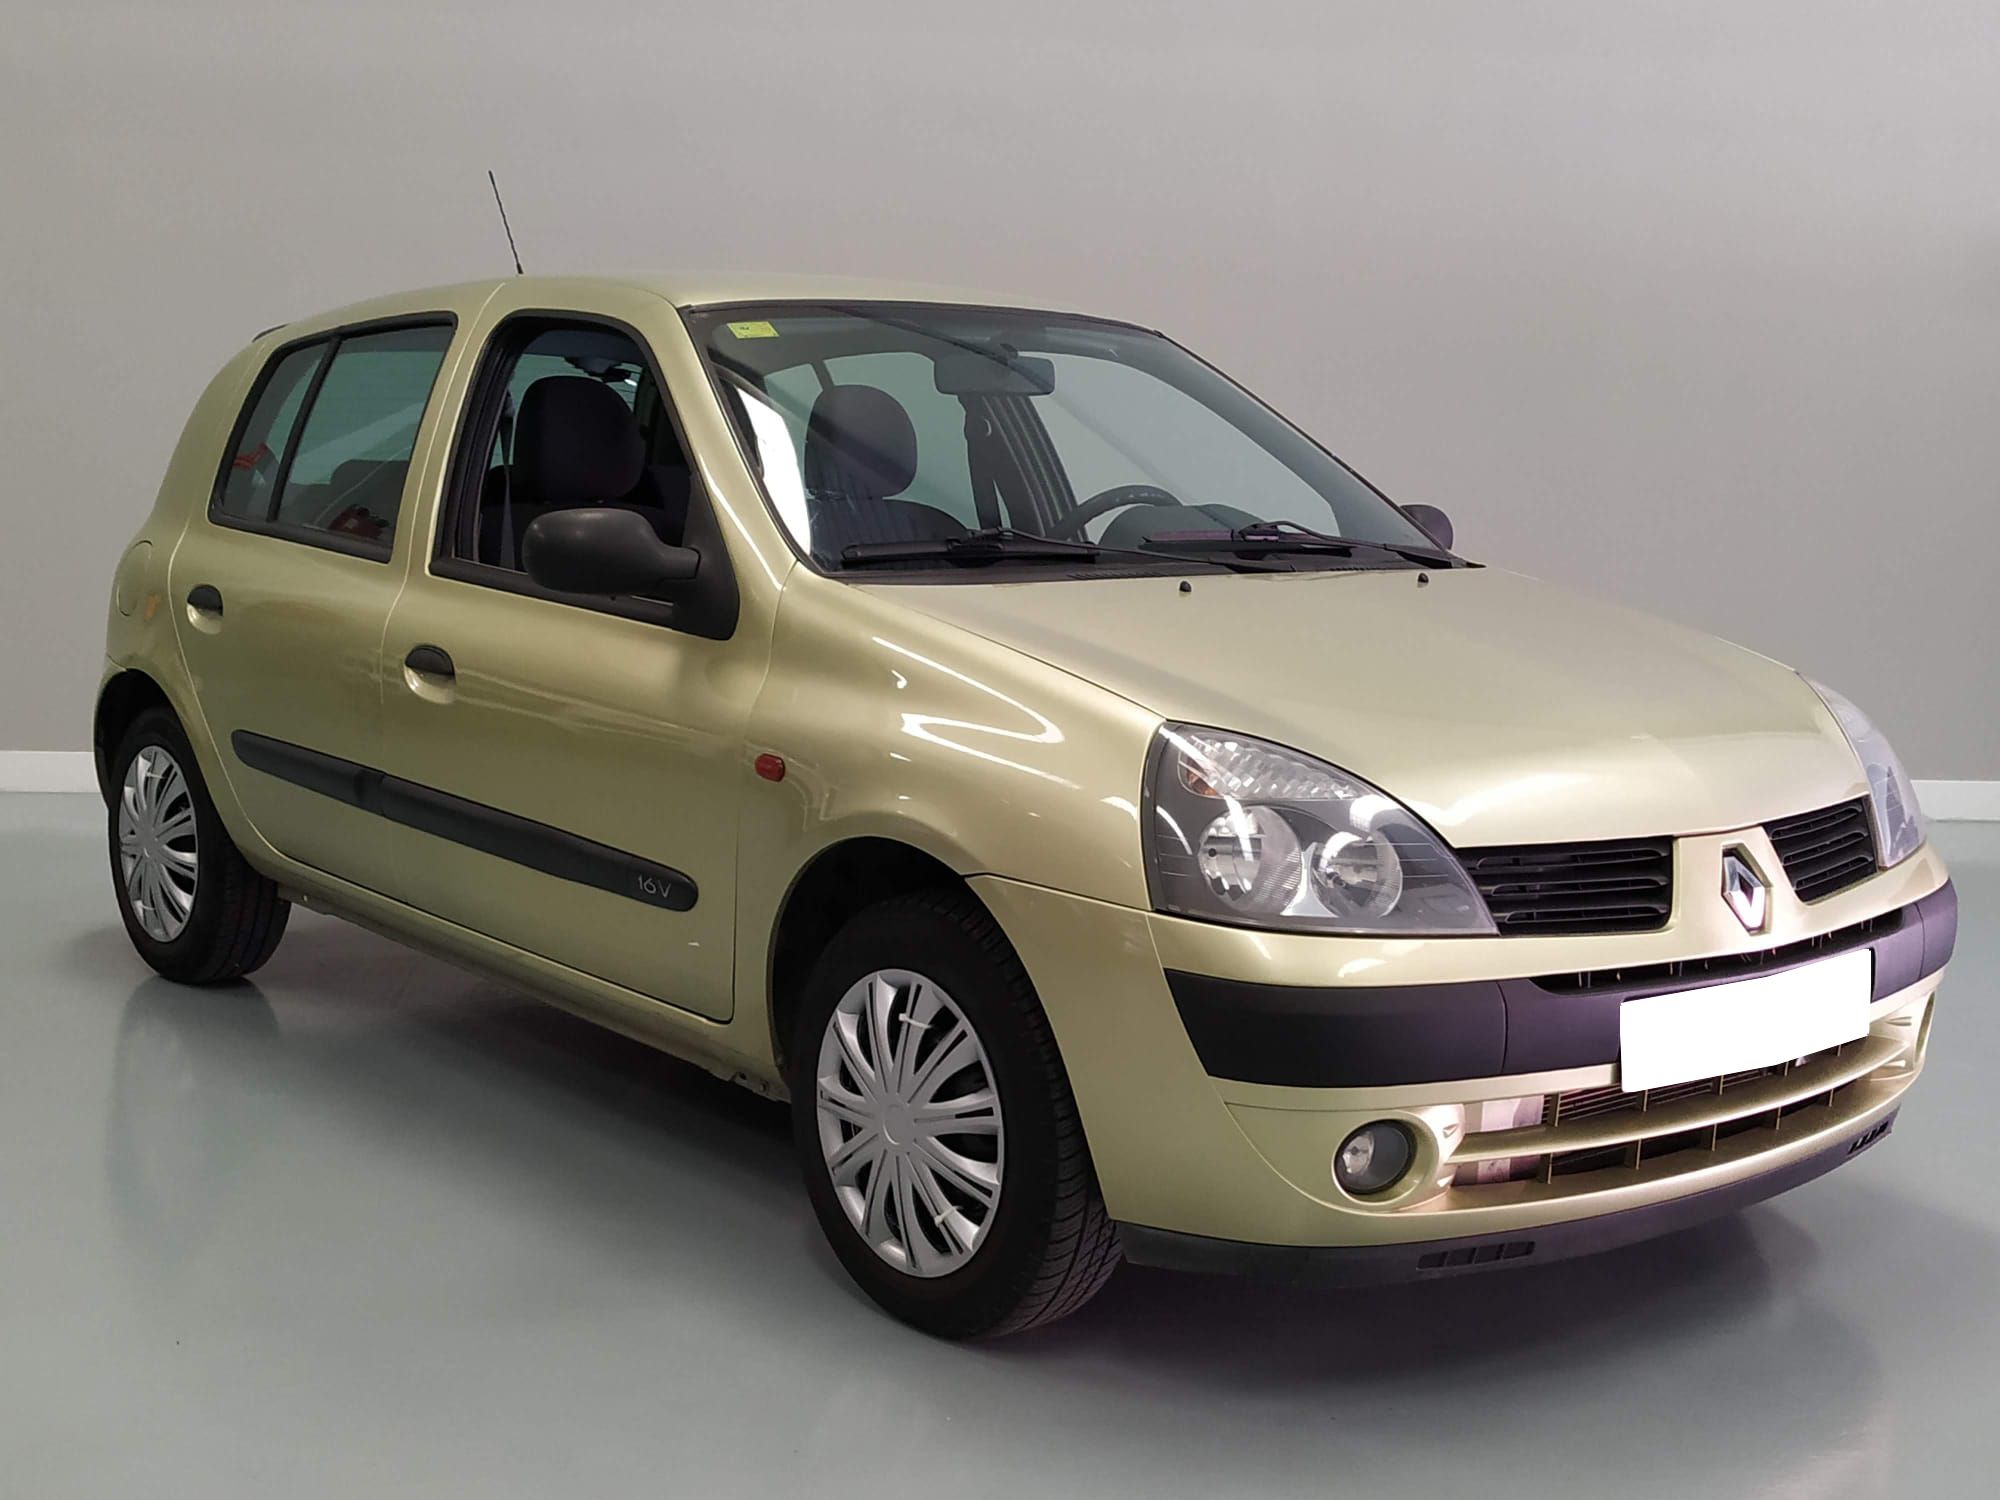 Nueva Recepción: Renault Clio 1.2i 16V 75 CV Confort Expressión. Económico, Revisado, Pocos Kms y Garantía 12 Meses.